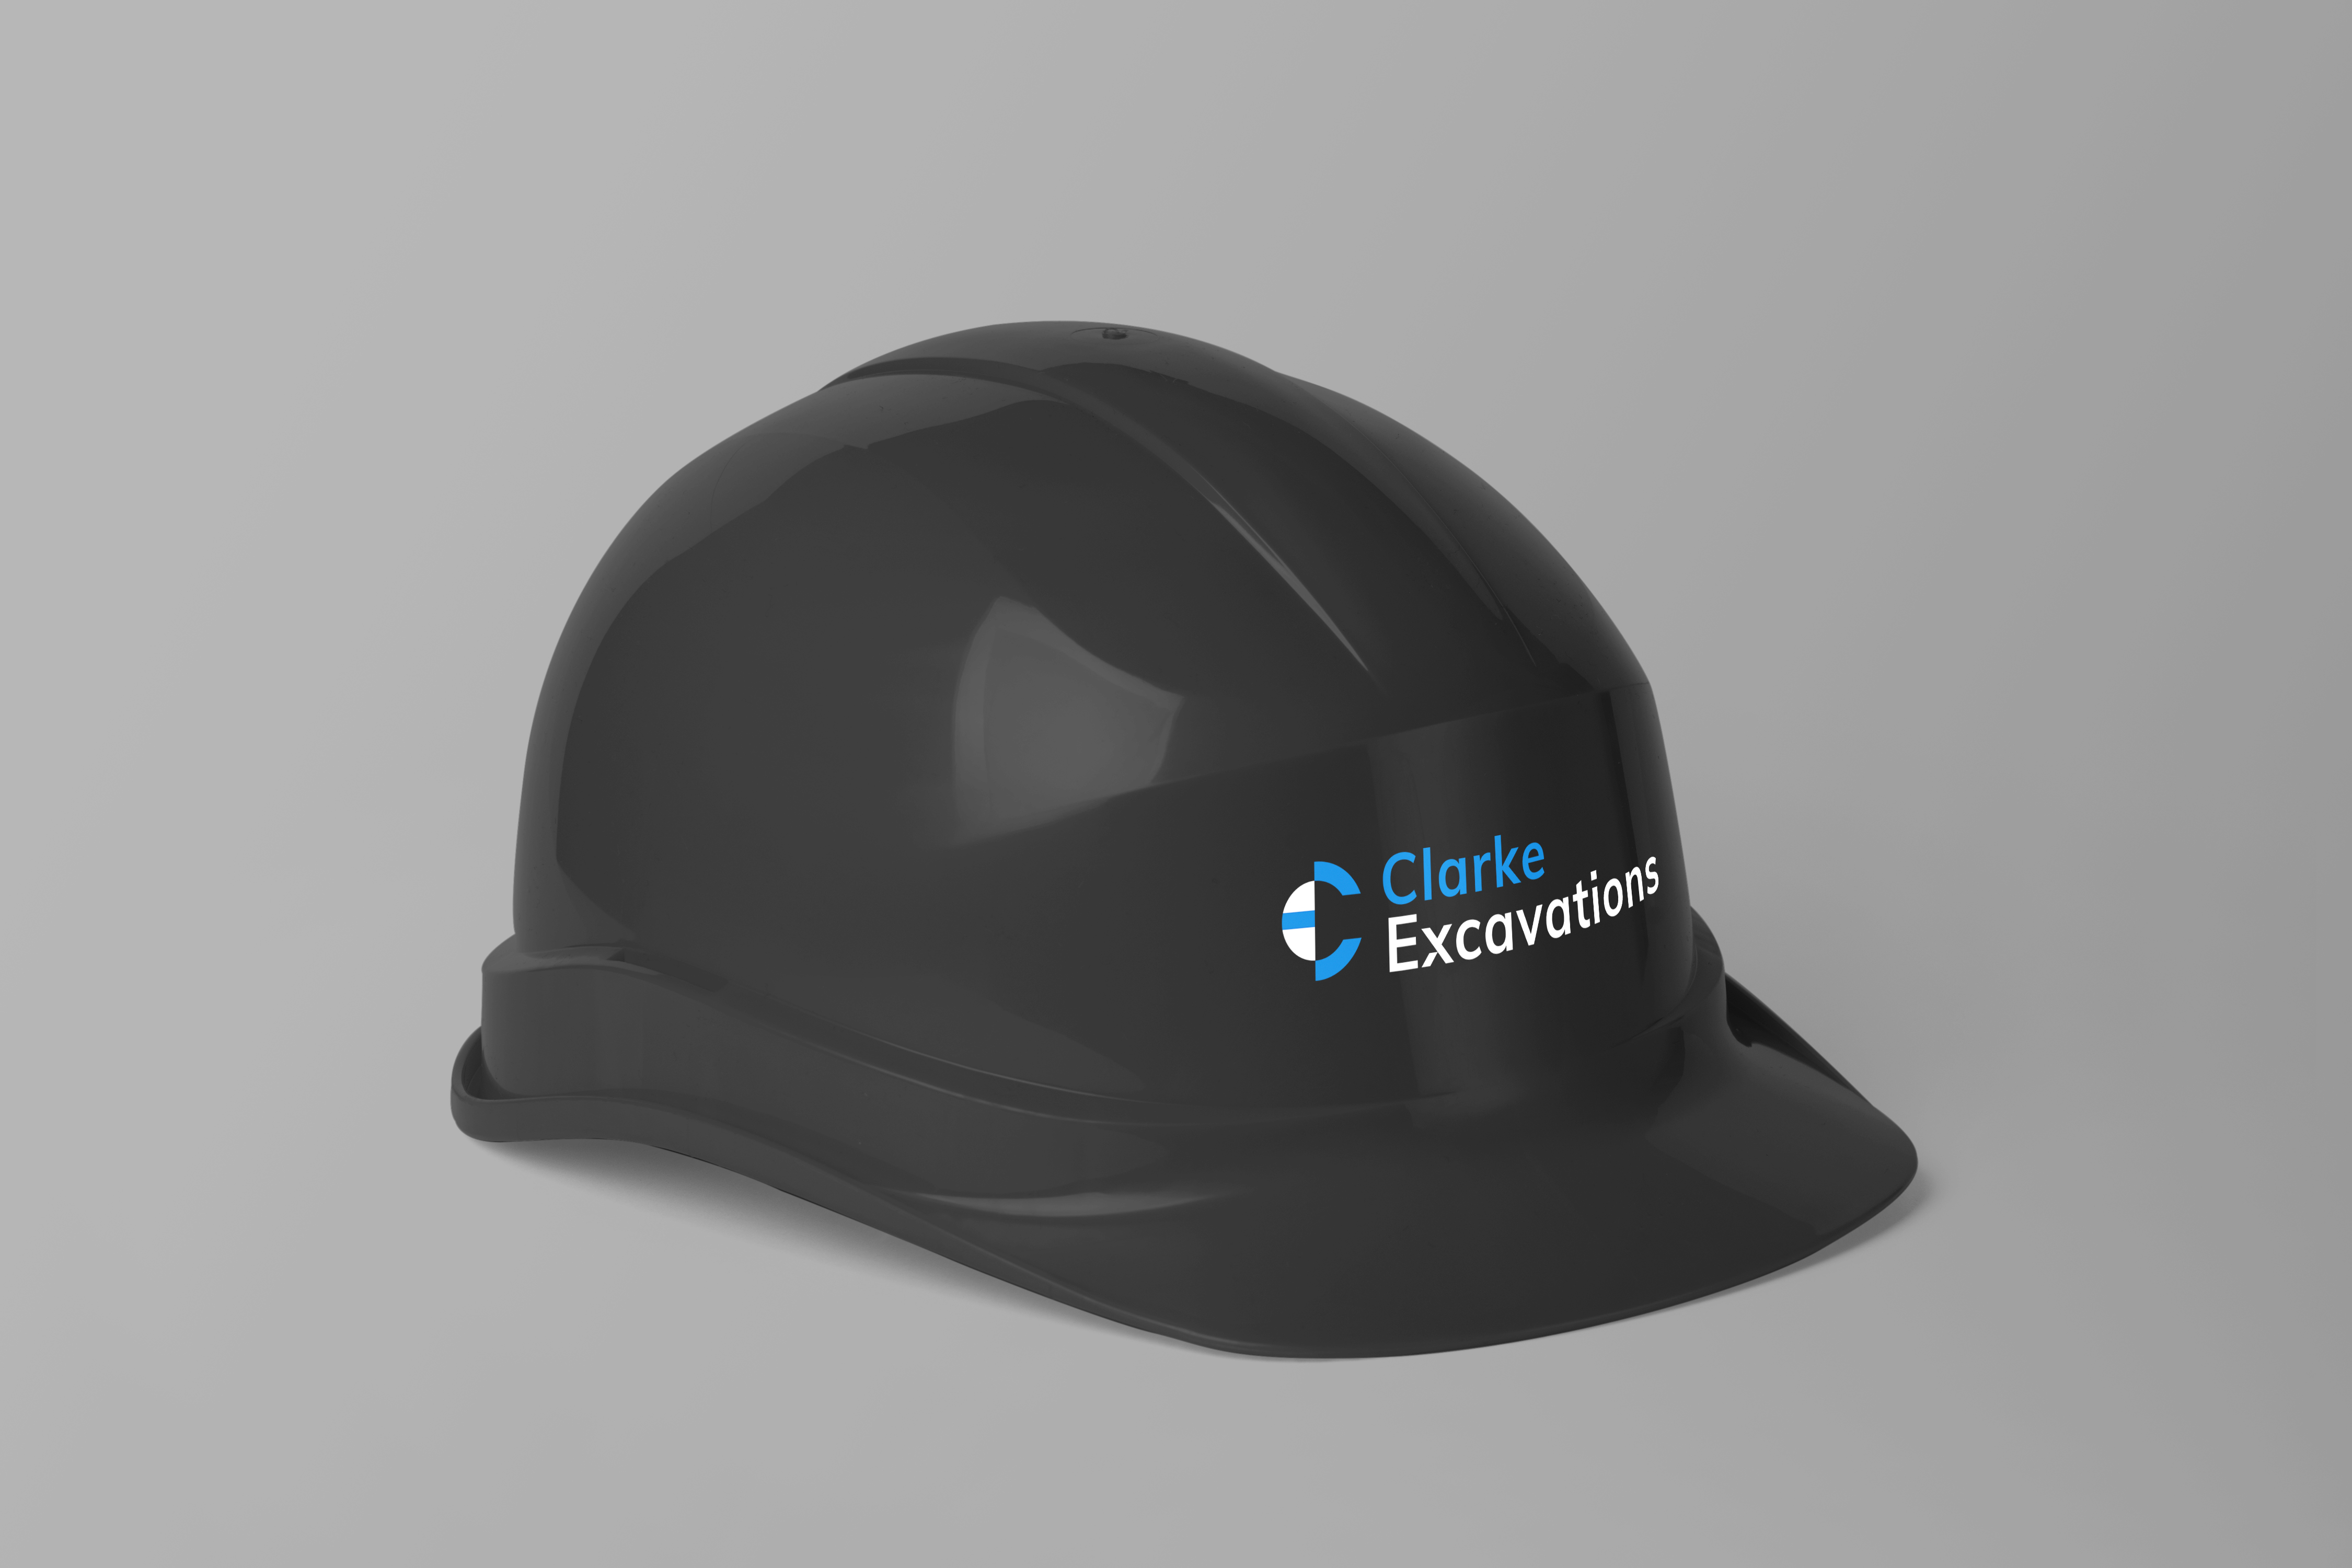 Logo on construction helmet